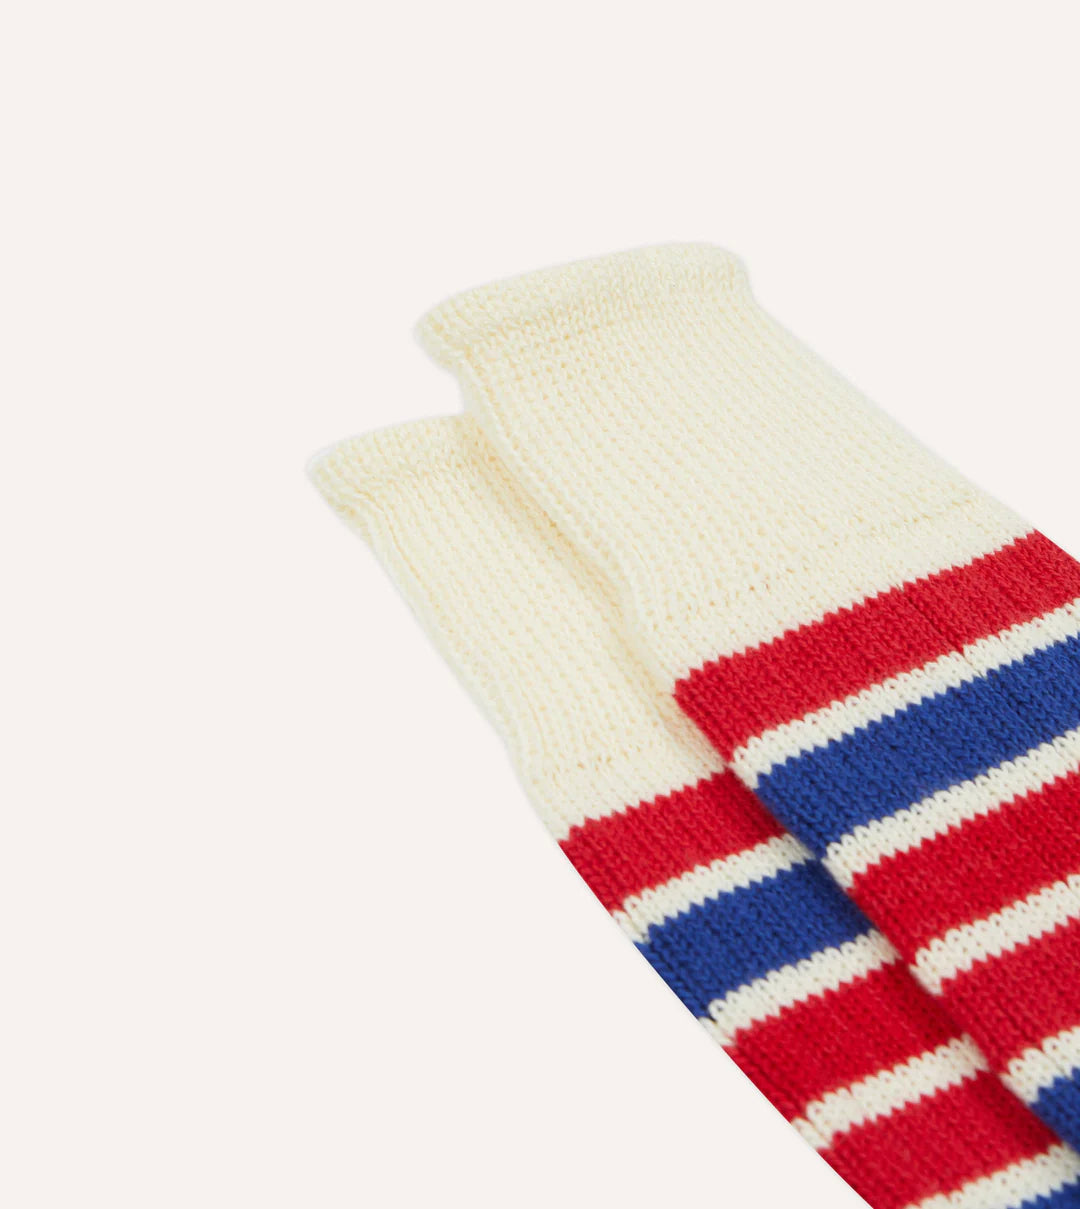 Striped Sport Sock - Ecru and Red